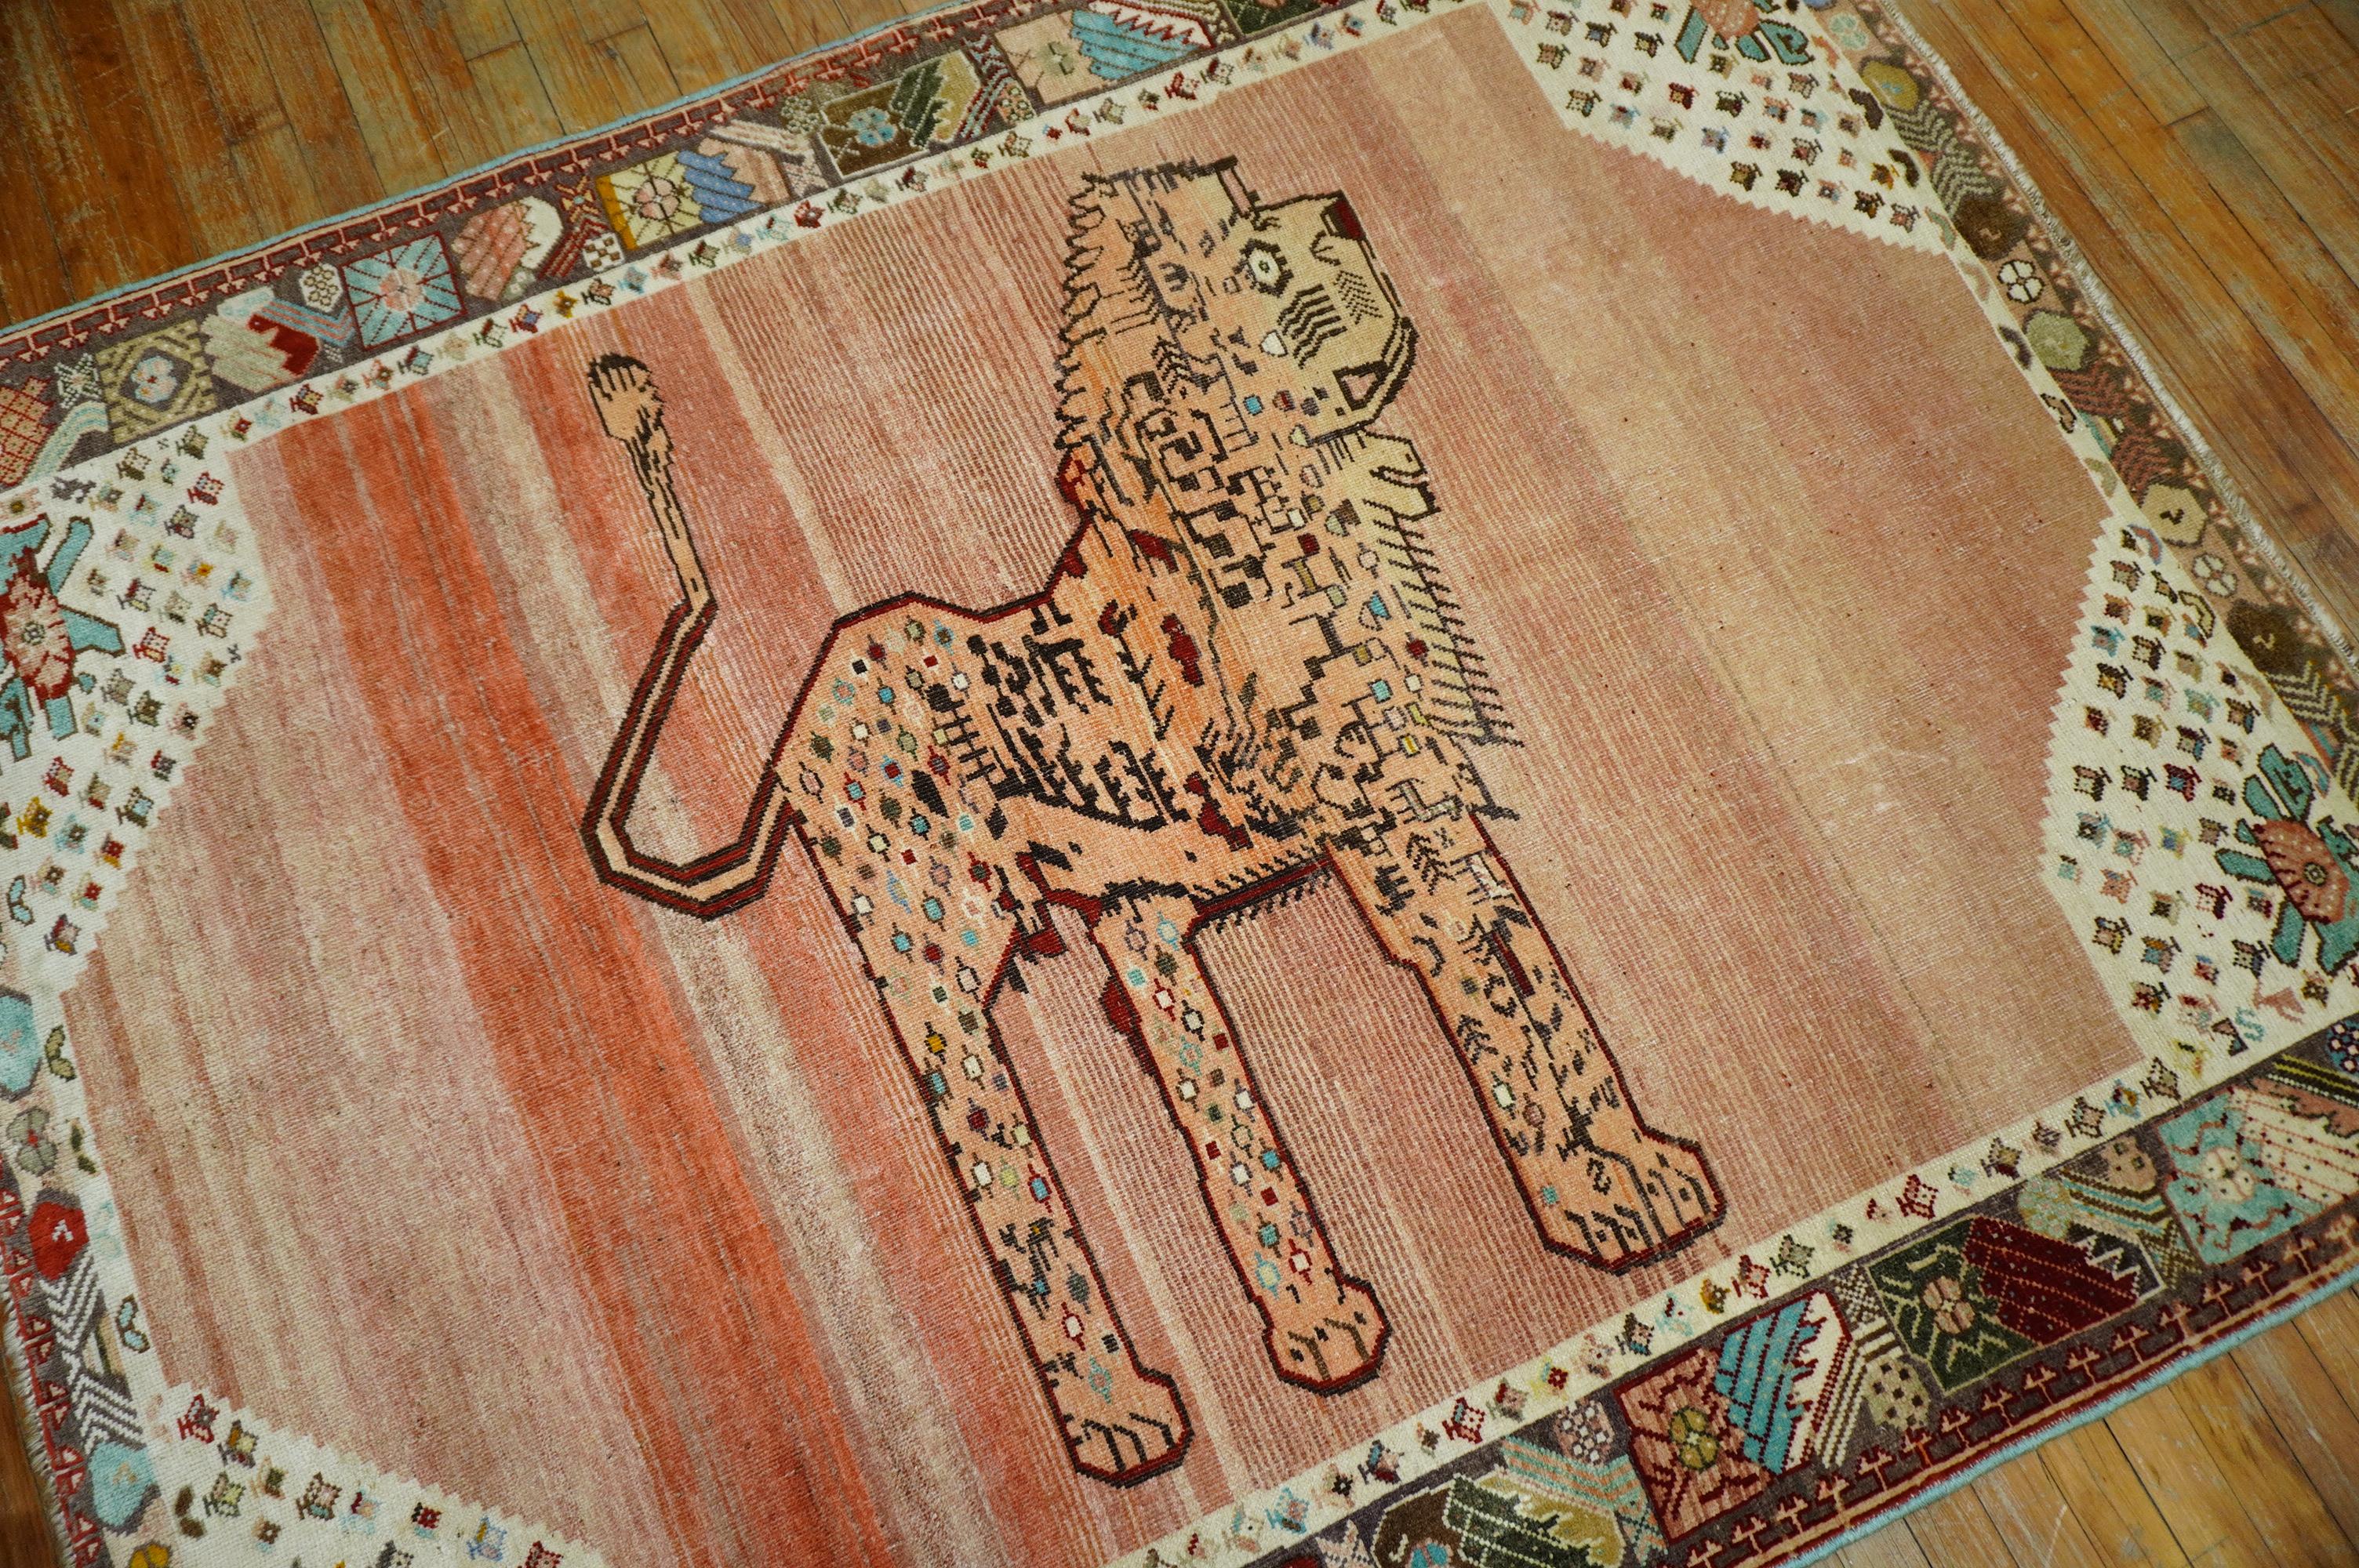 perserteppich aus dem 3. Viertel des 20. Jahrhunderts mit einem freistehenden Löwen auf pfirsichfarbenem, abgewetztem Grund. Auch die Umrandung ist wunderschön, da sie einige türkisfarbene Akzente enthält

Maße: 5'1'' x 6'5''.